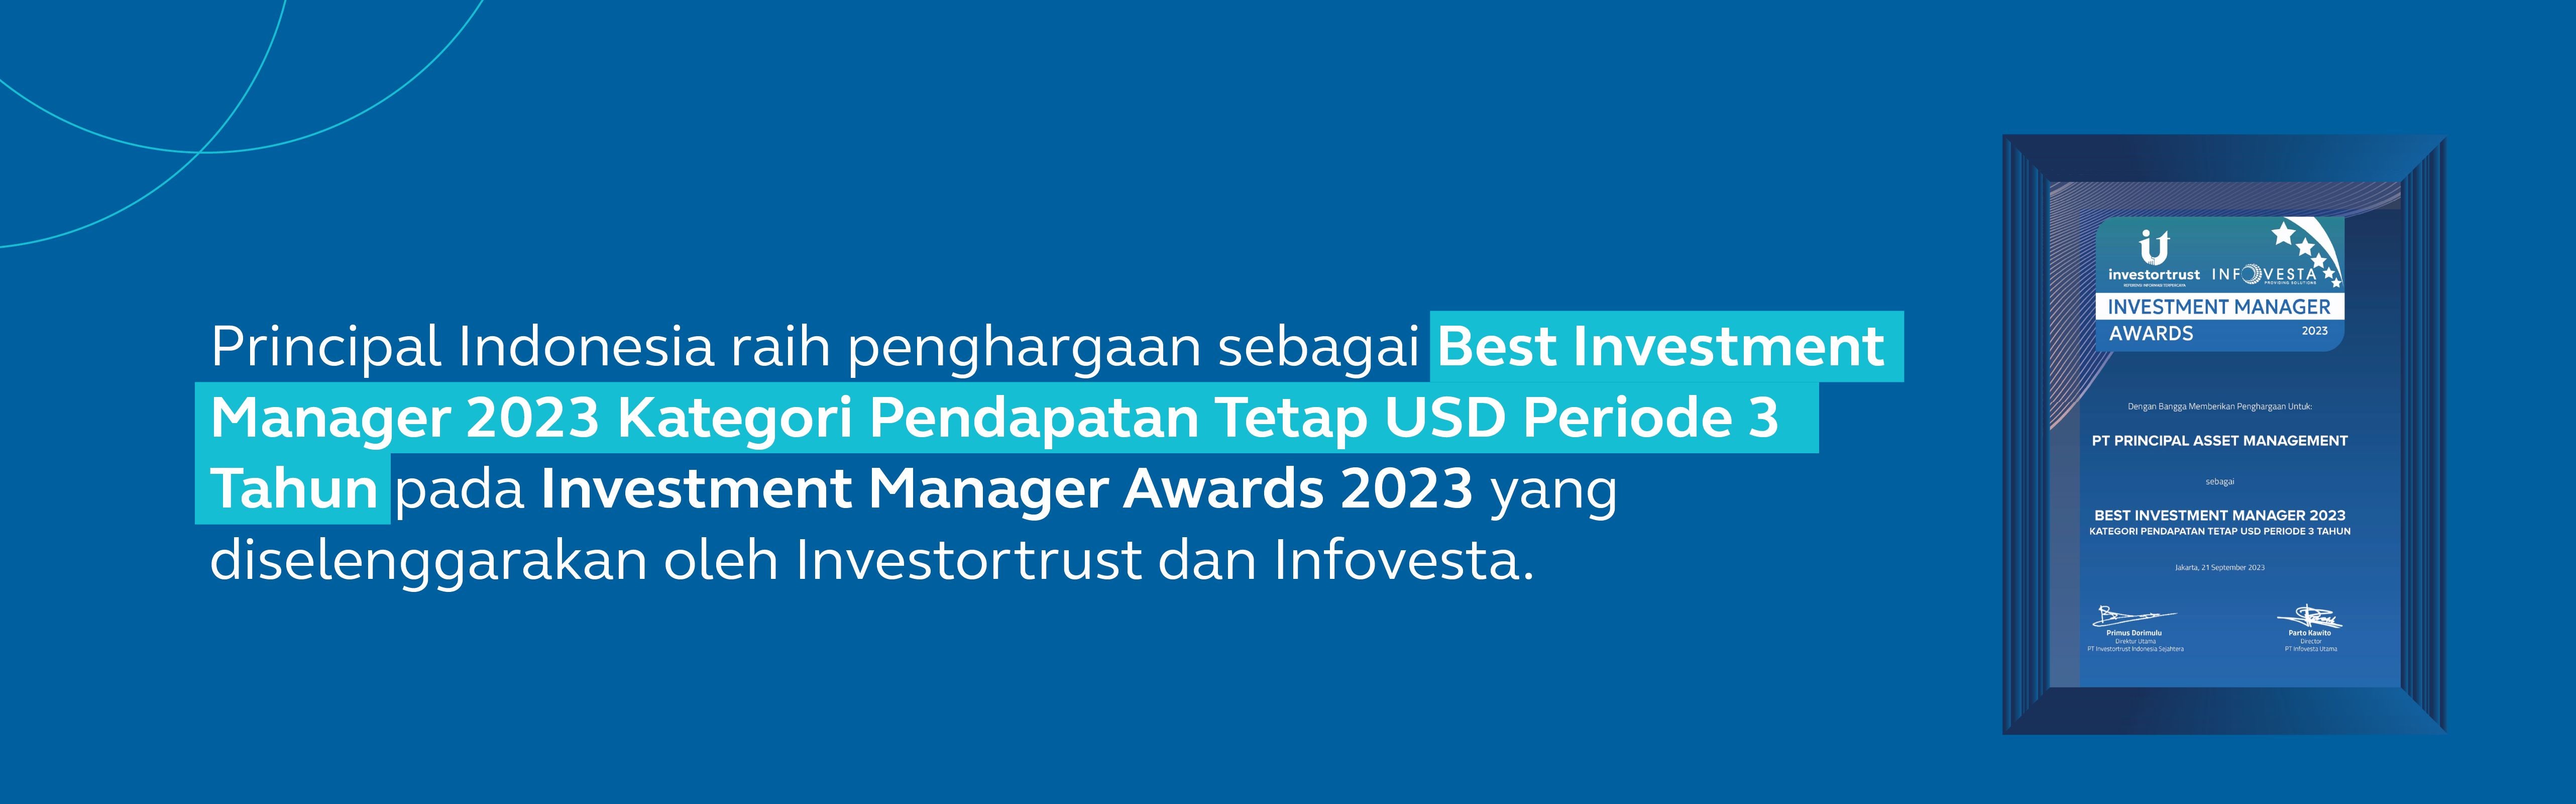 Principal Asset Management Meraih Penghargaan Manajer Investasi Terbaik 2023 dari Investortrust.id 